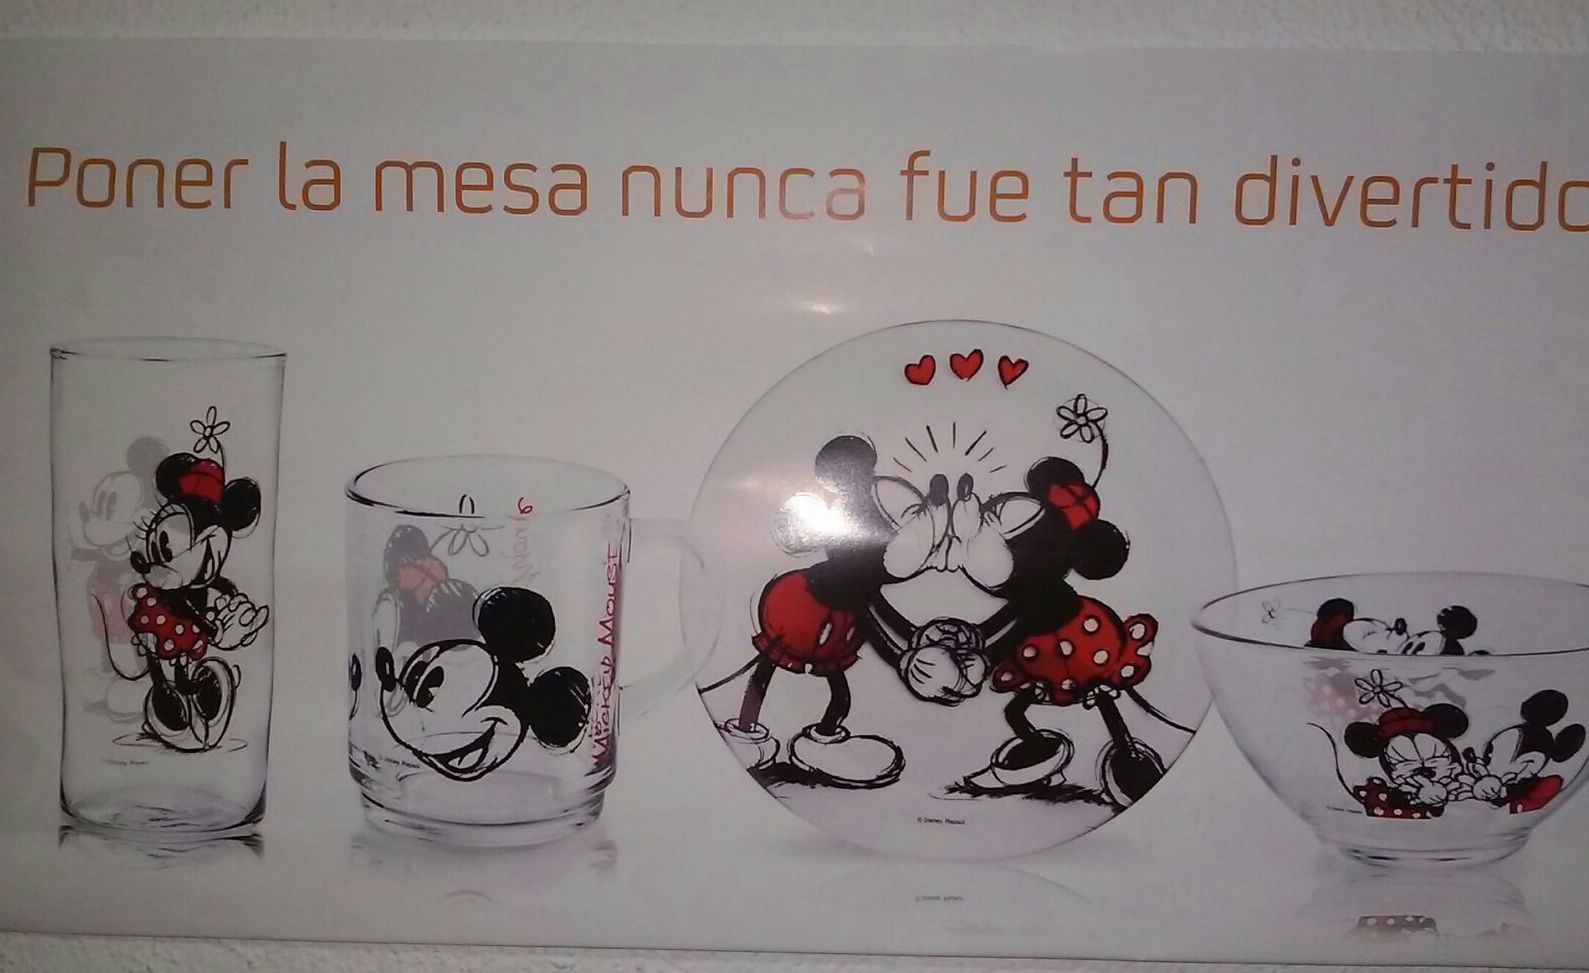 Promocion Disney ,por cada 500 litros + 1 euro obtendra un divertido plato ,vaso,bol o taza.segun desee.